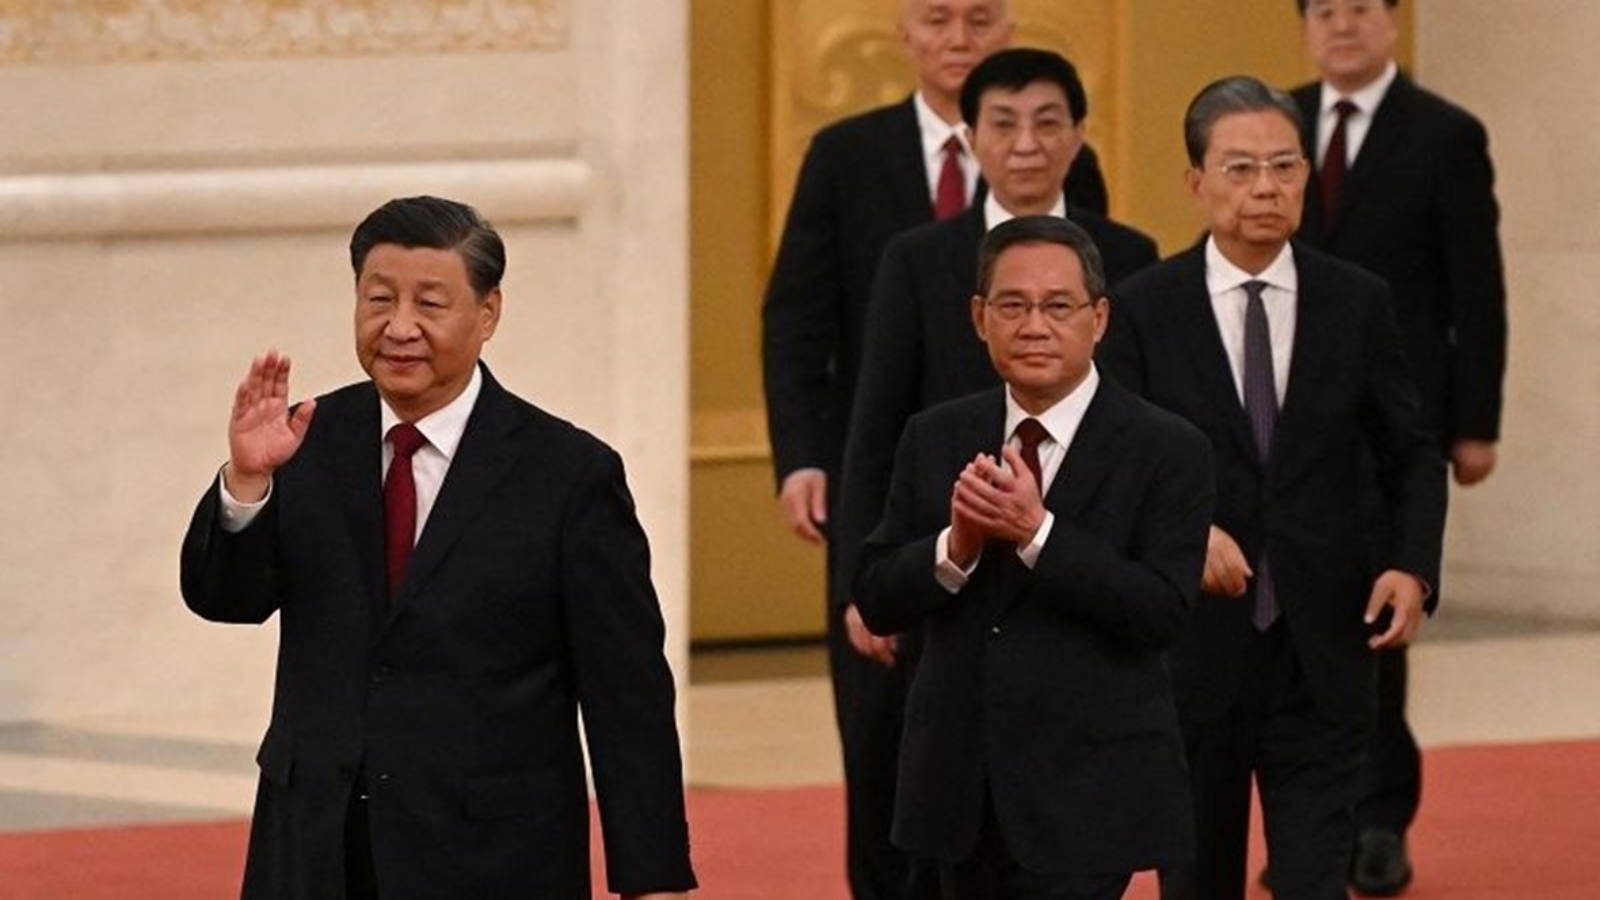 الرئيس الصيني شي جينبينغ (يسار) يسير مع أعضاء اللجنة الدائمة للمكتب السياسي الجديد للحزب الشيوعي الصيني في قاعة الشعب الكبرى في بكين